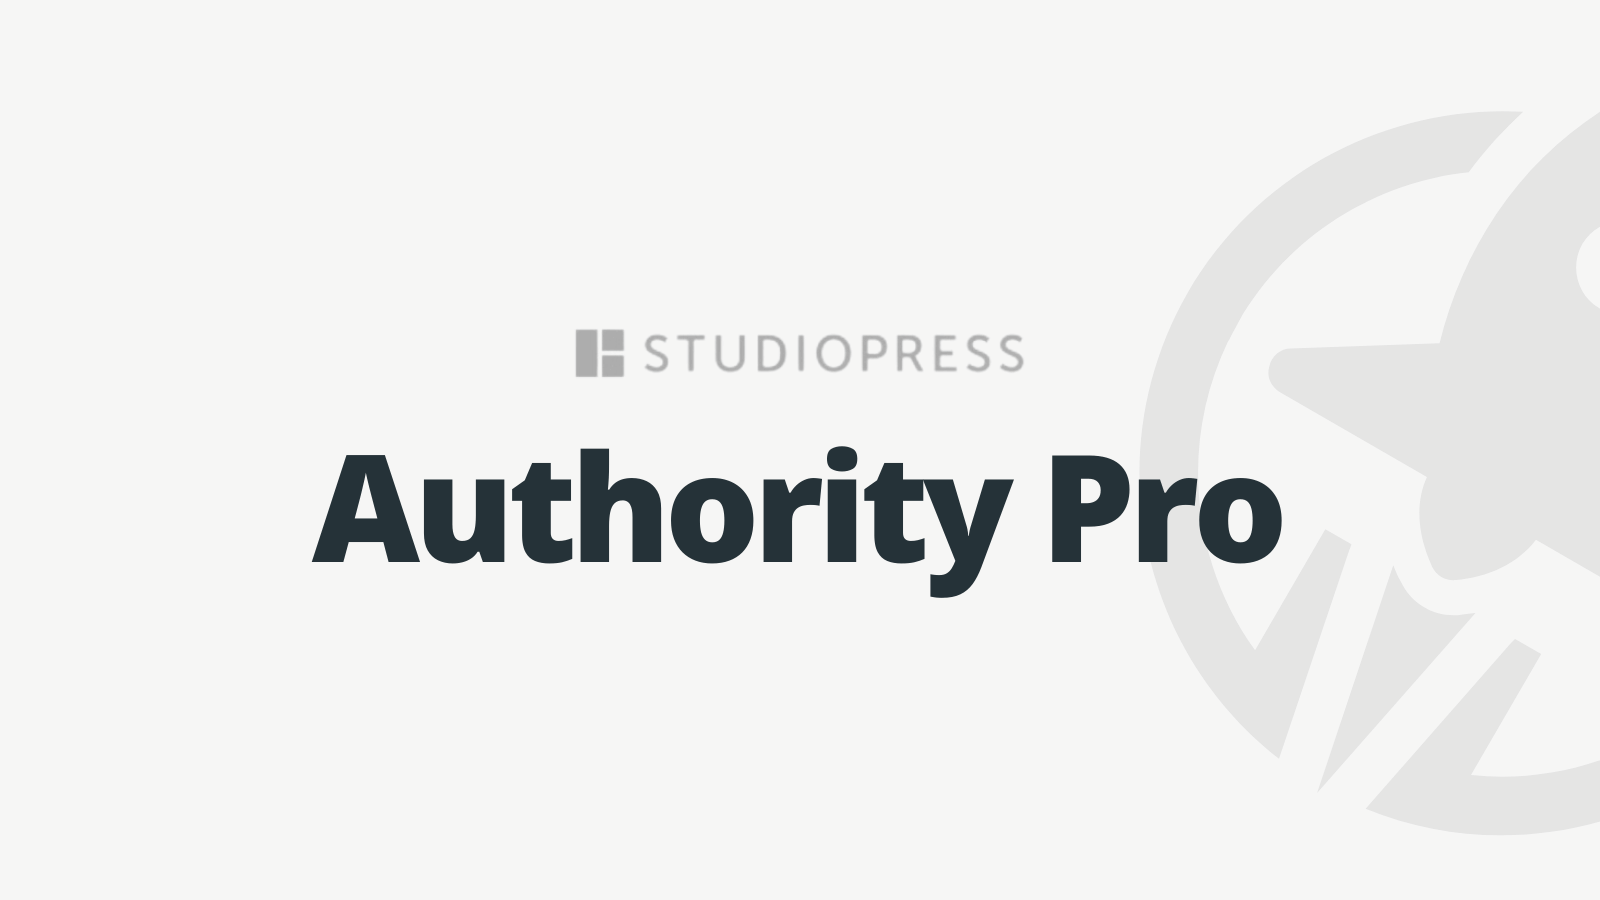 Authority Pro